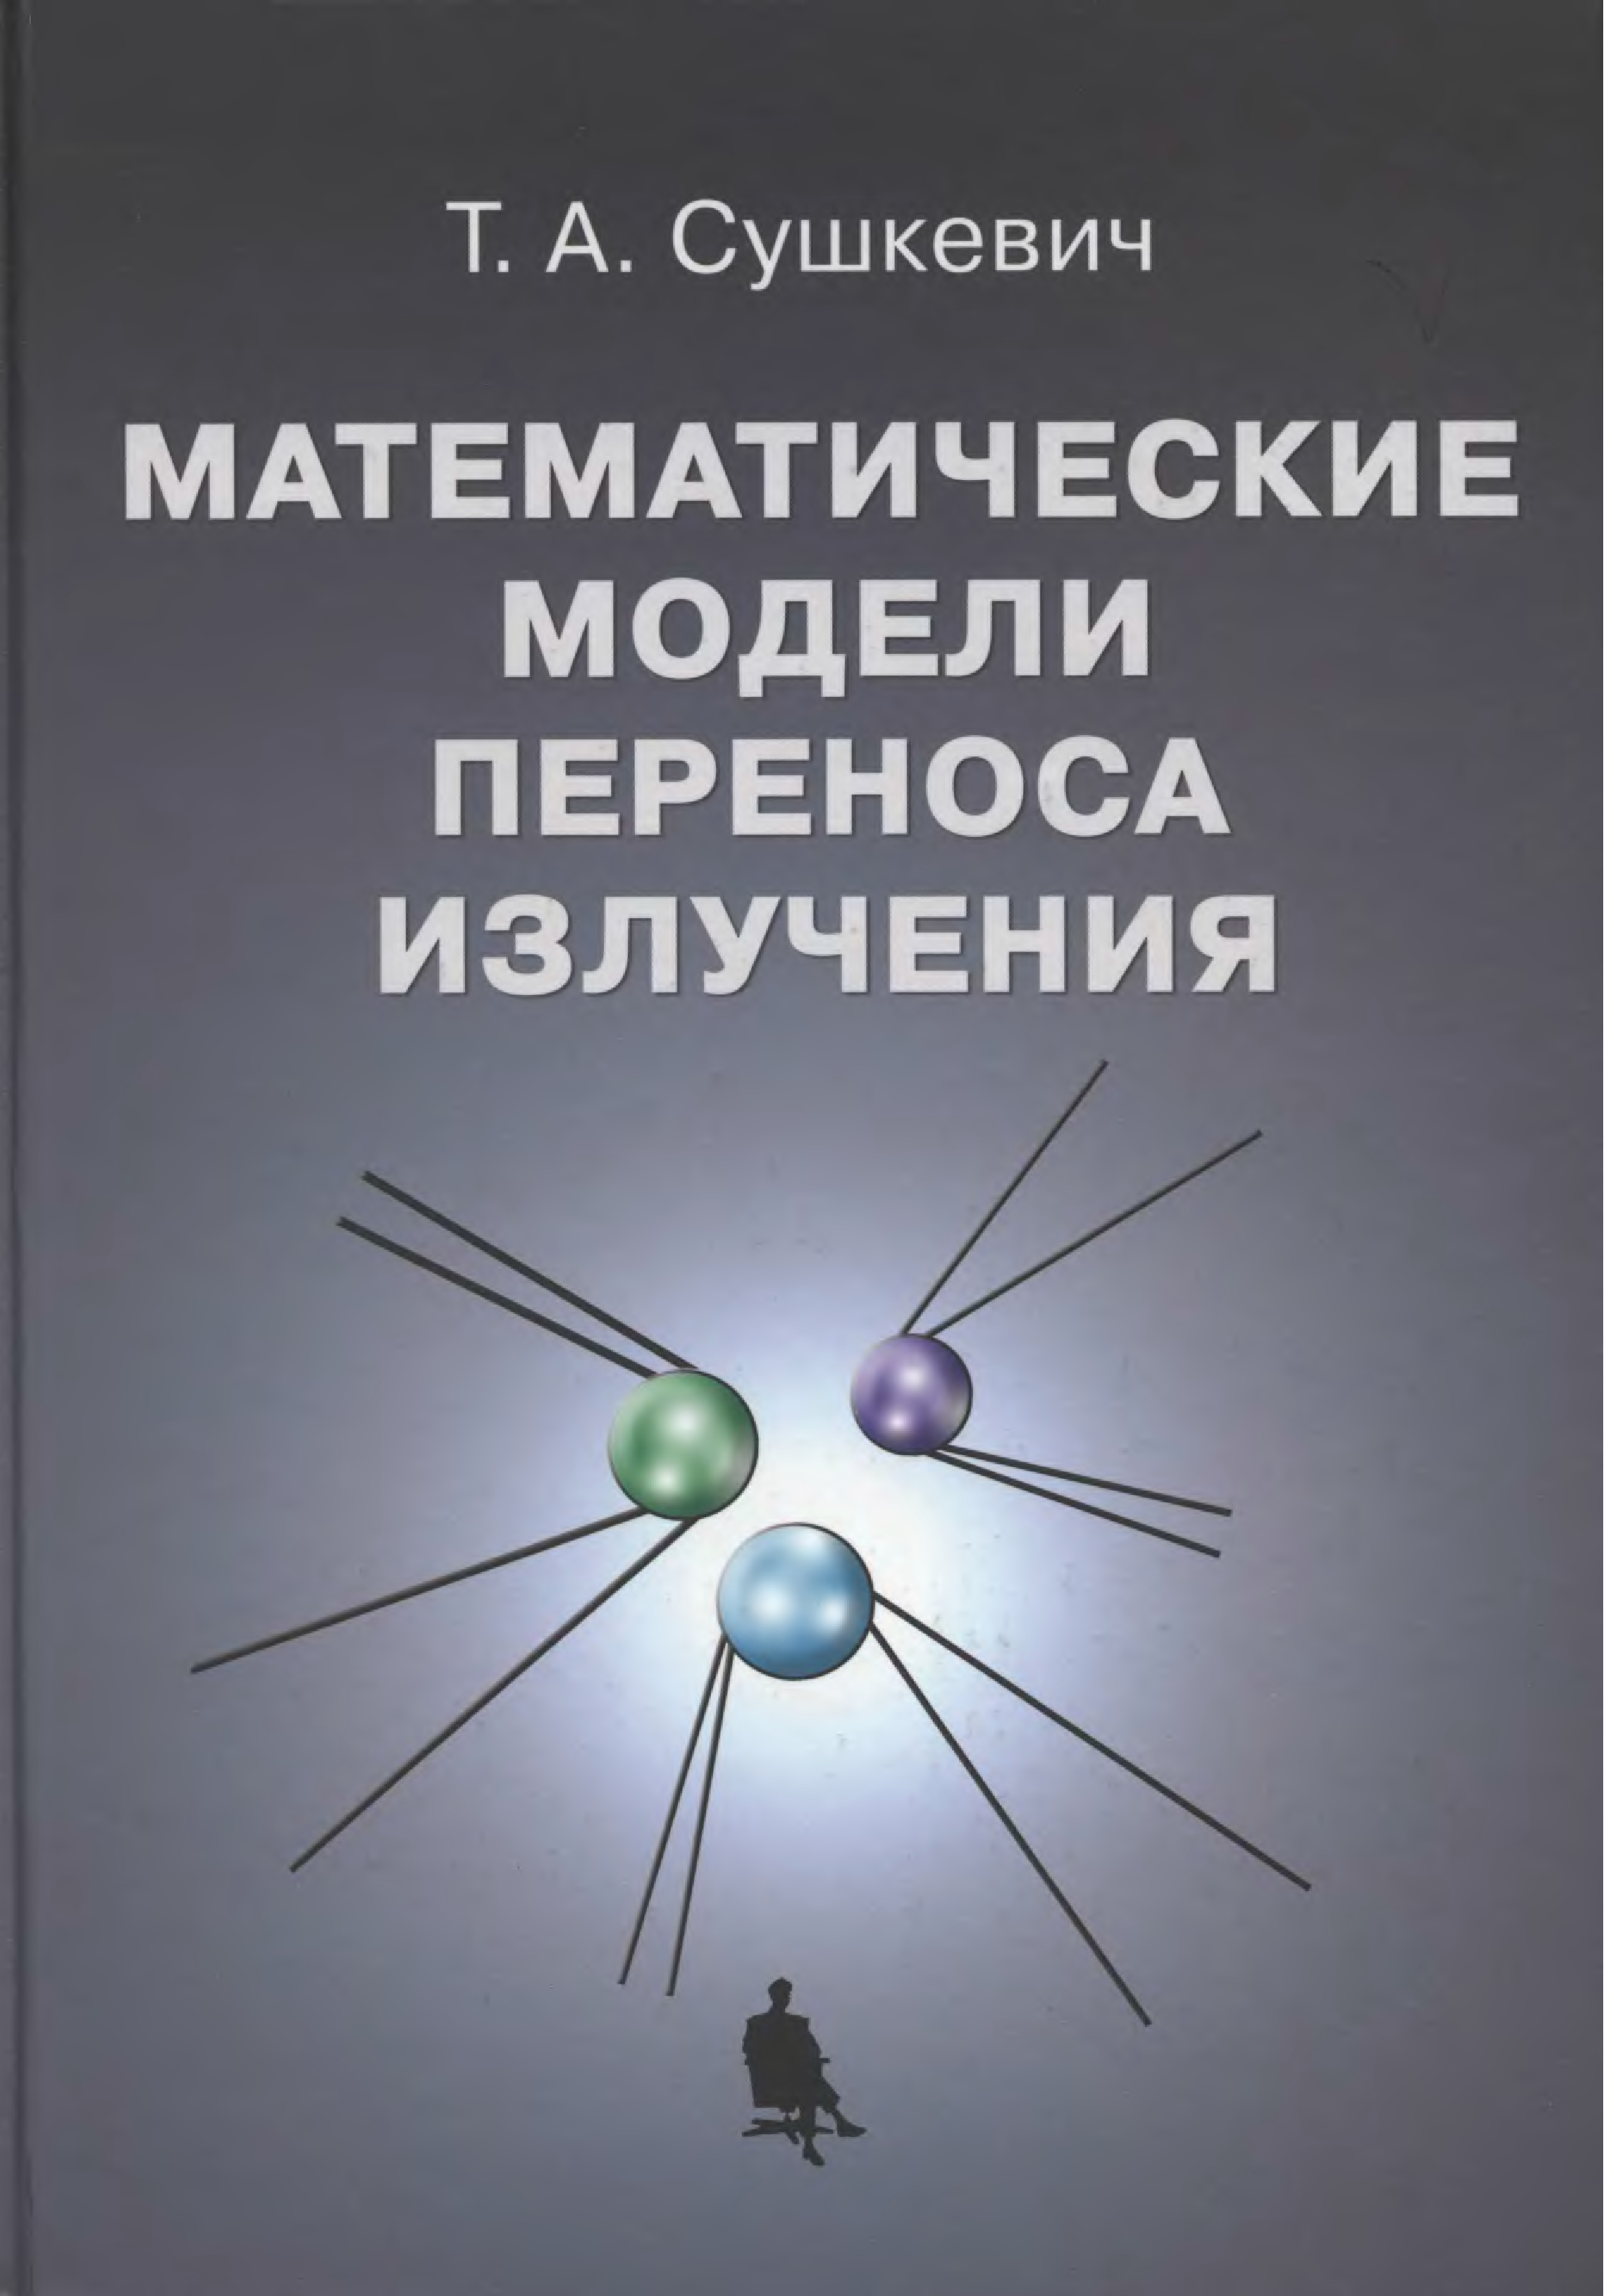 Радиация книги. Излучение книги. Митогенетическое излучение. Математические модели и авторы.